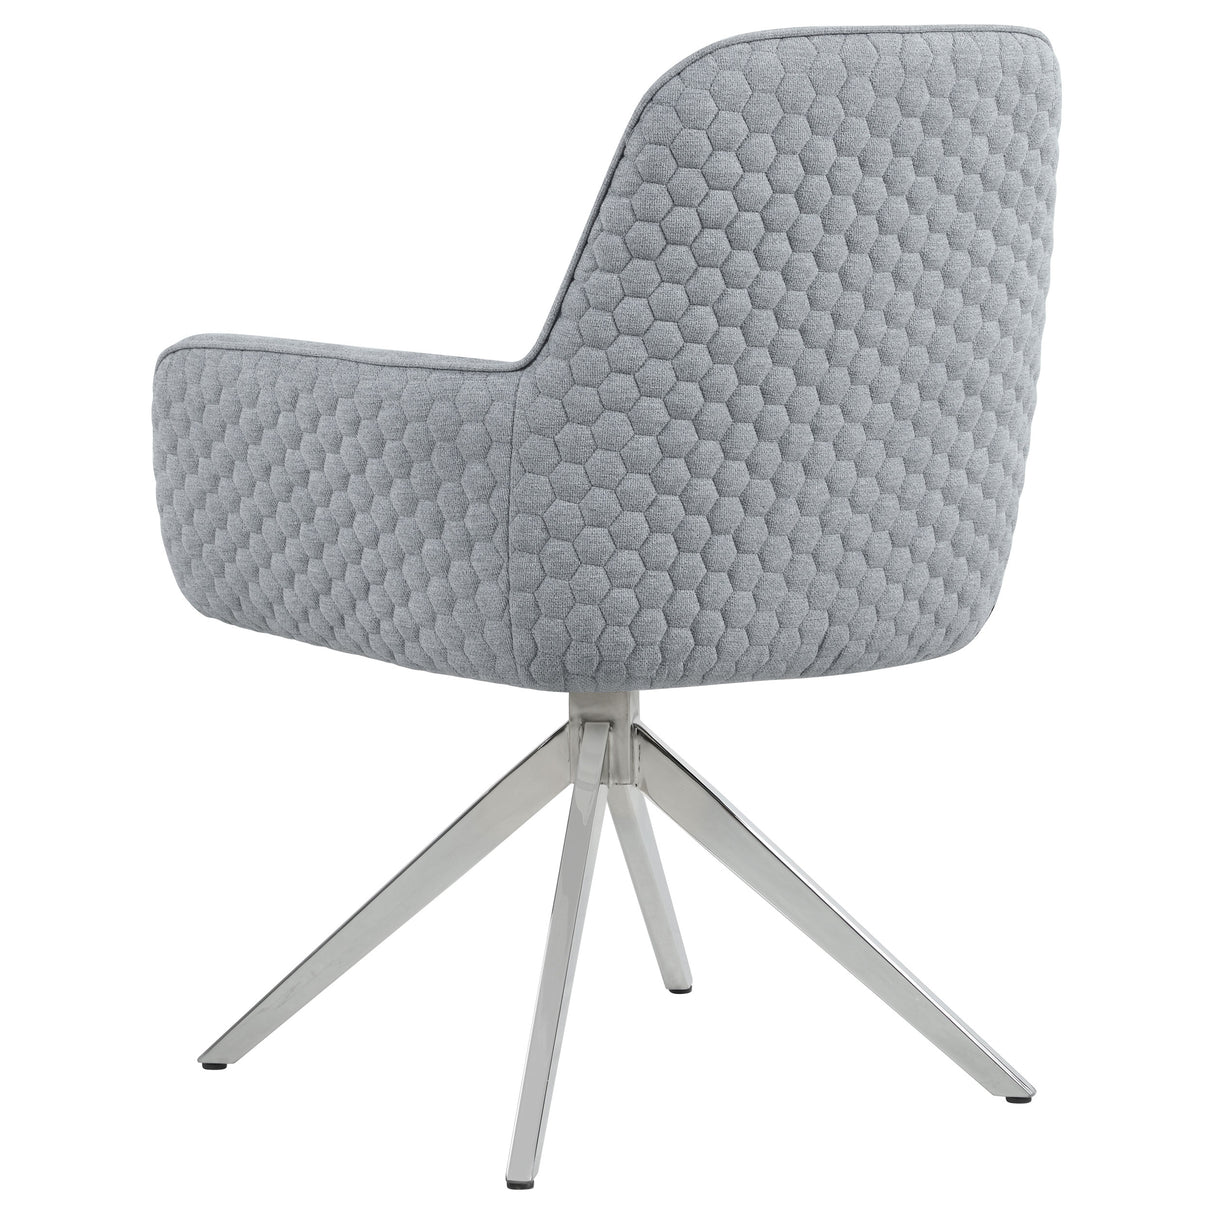 Swivel Arm Chair - Abby Flare Arm Side Chair Light Grey and Chrome